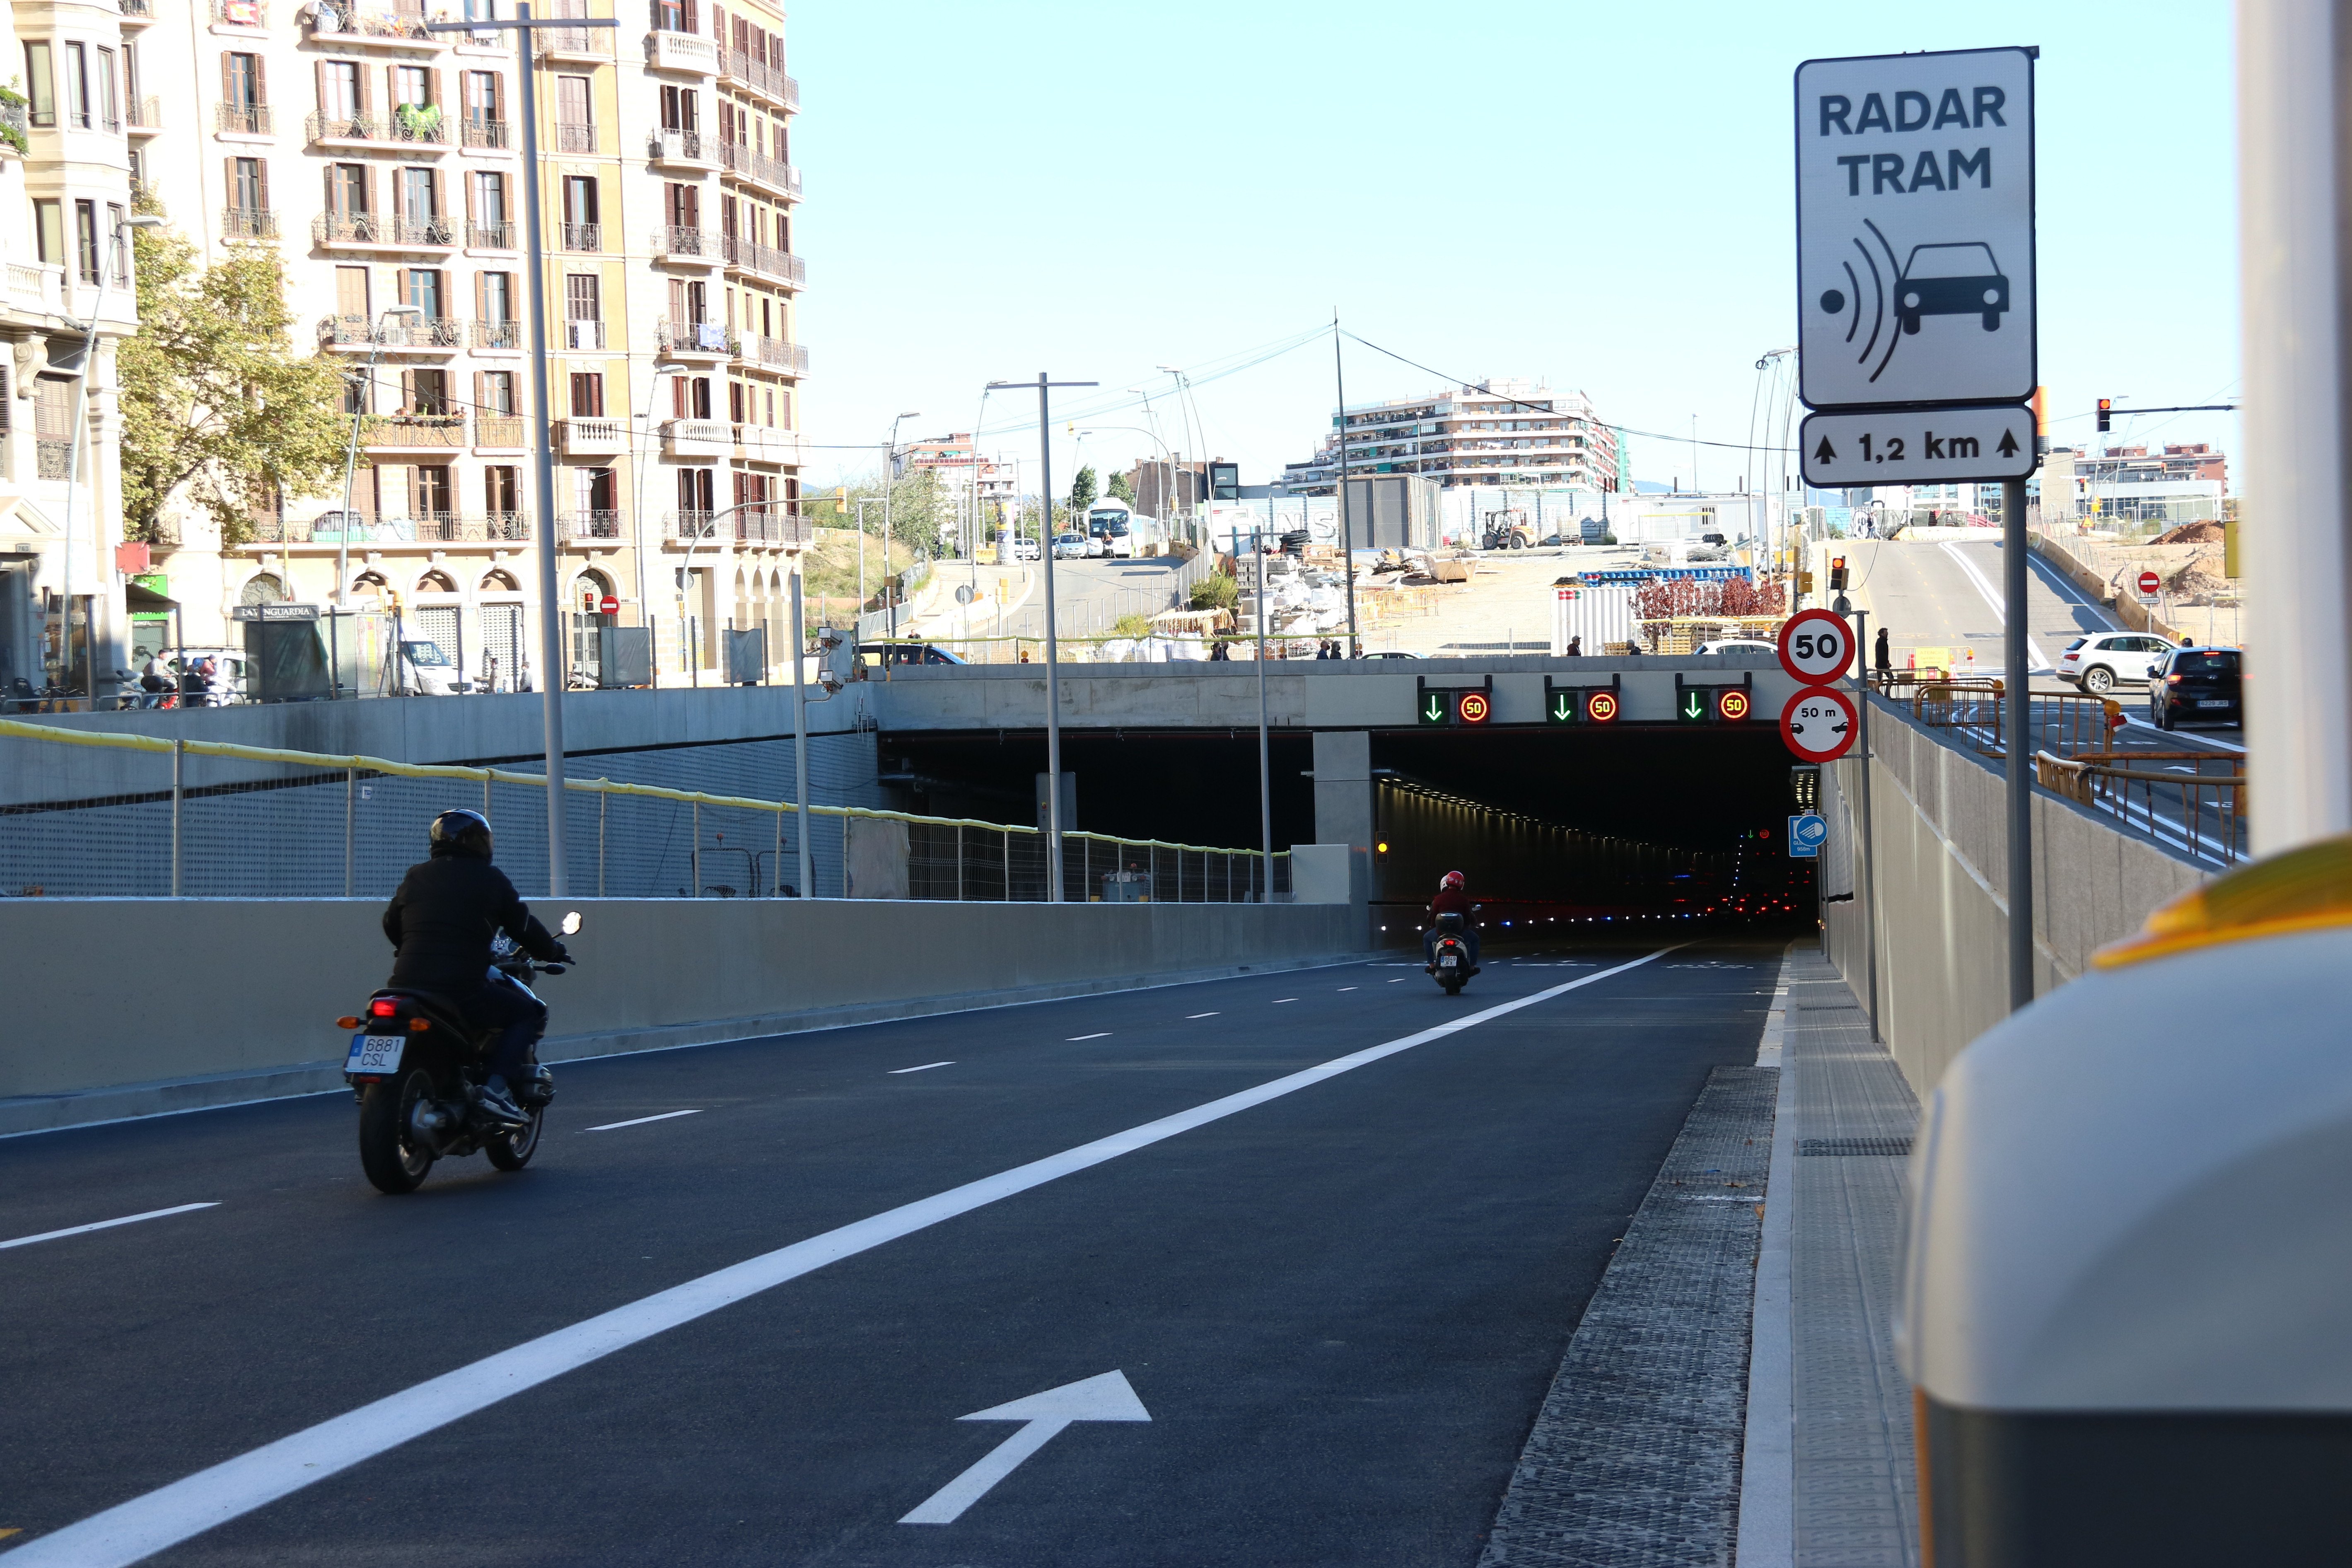 El Túnel de Glòries no tiene baches, tiene un "asfalto rugoso", según el Ayuntamiento